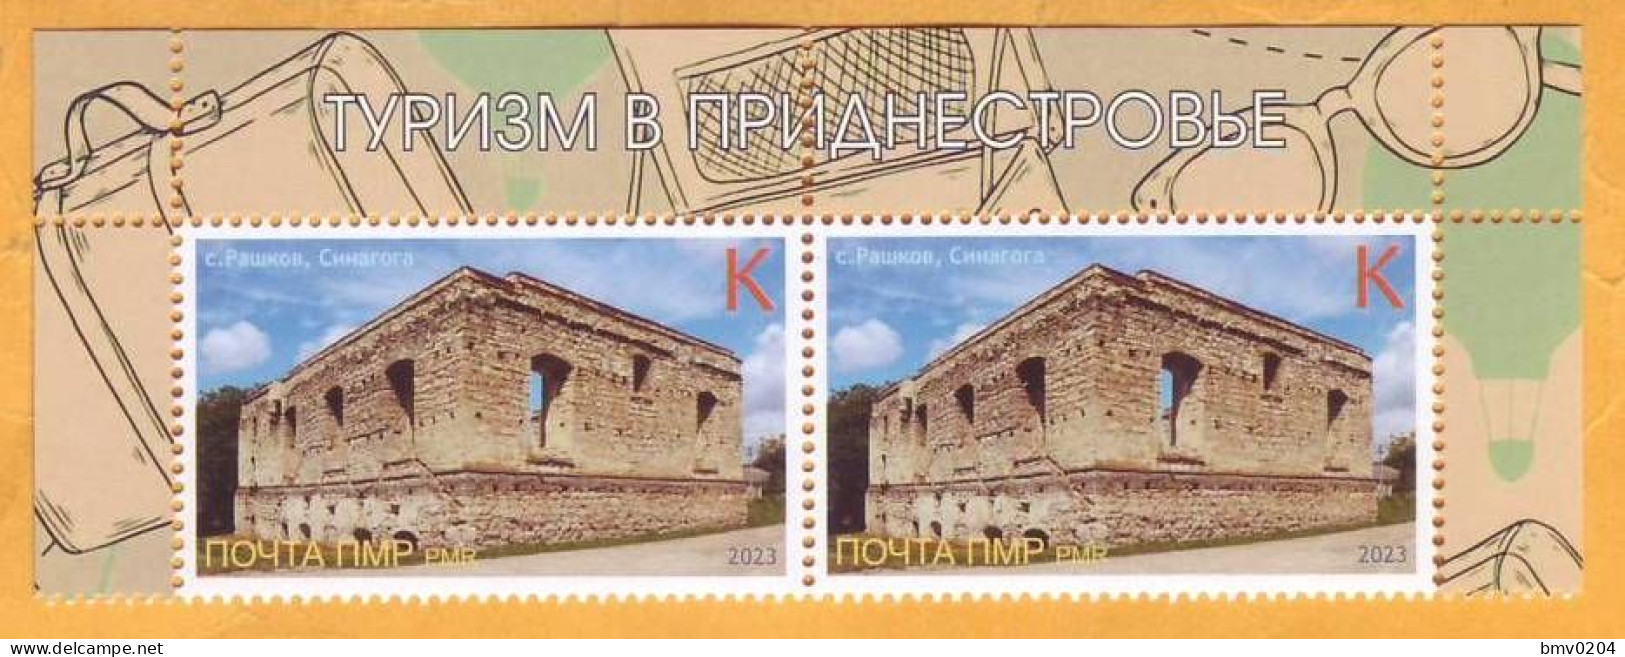 2023 Moldova Transnistria Tiraspol Ruins Of A Synagogue In The Village Of Rashkov, Hasicism, Jewish Community, 2v Mint - Moldavie